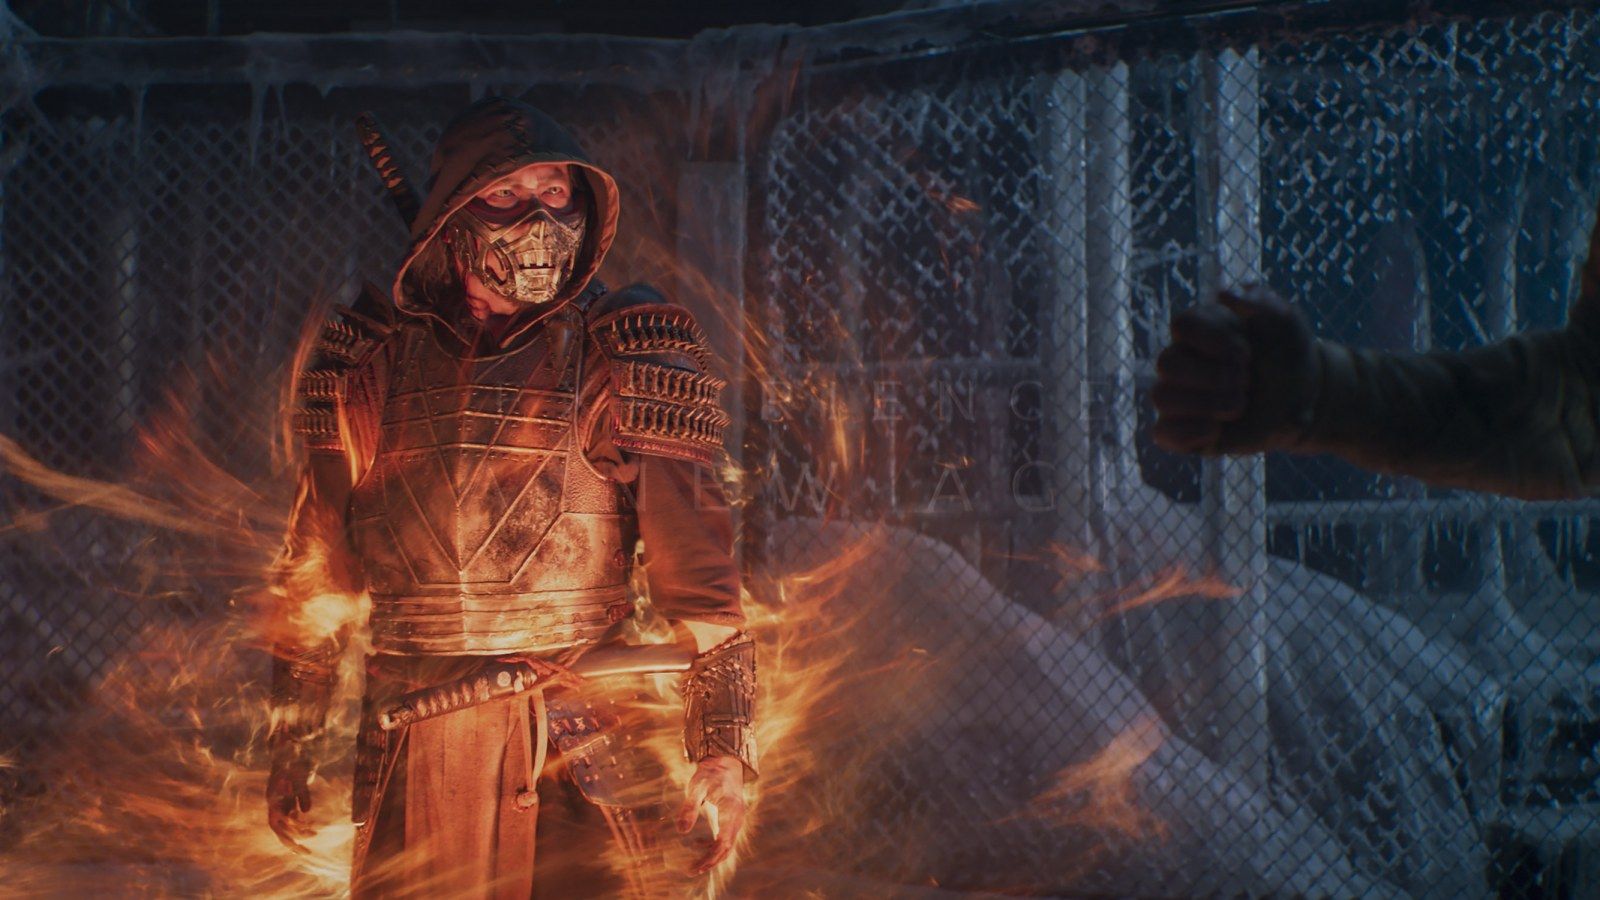 Mortal Kombat' Director Simon McQuoid Talks Opening Scene's Focus on Scorpion